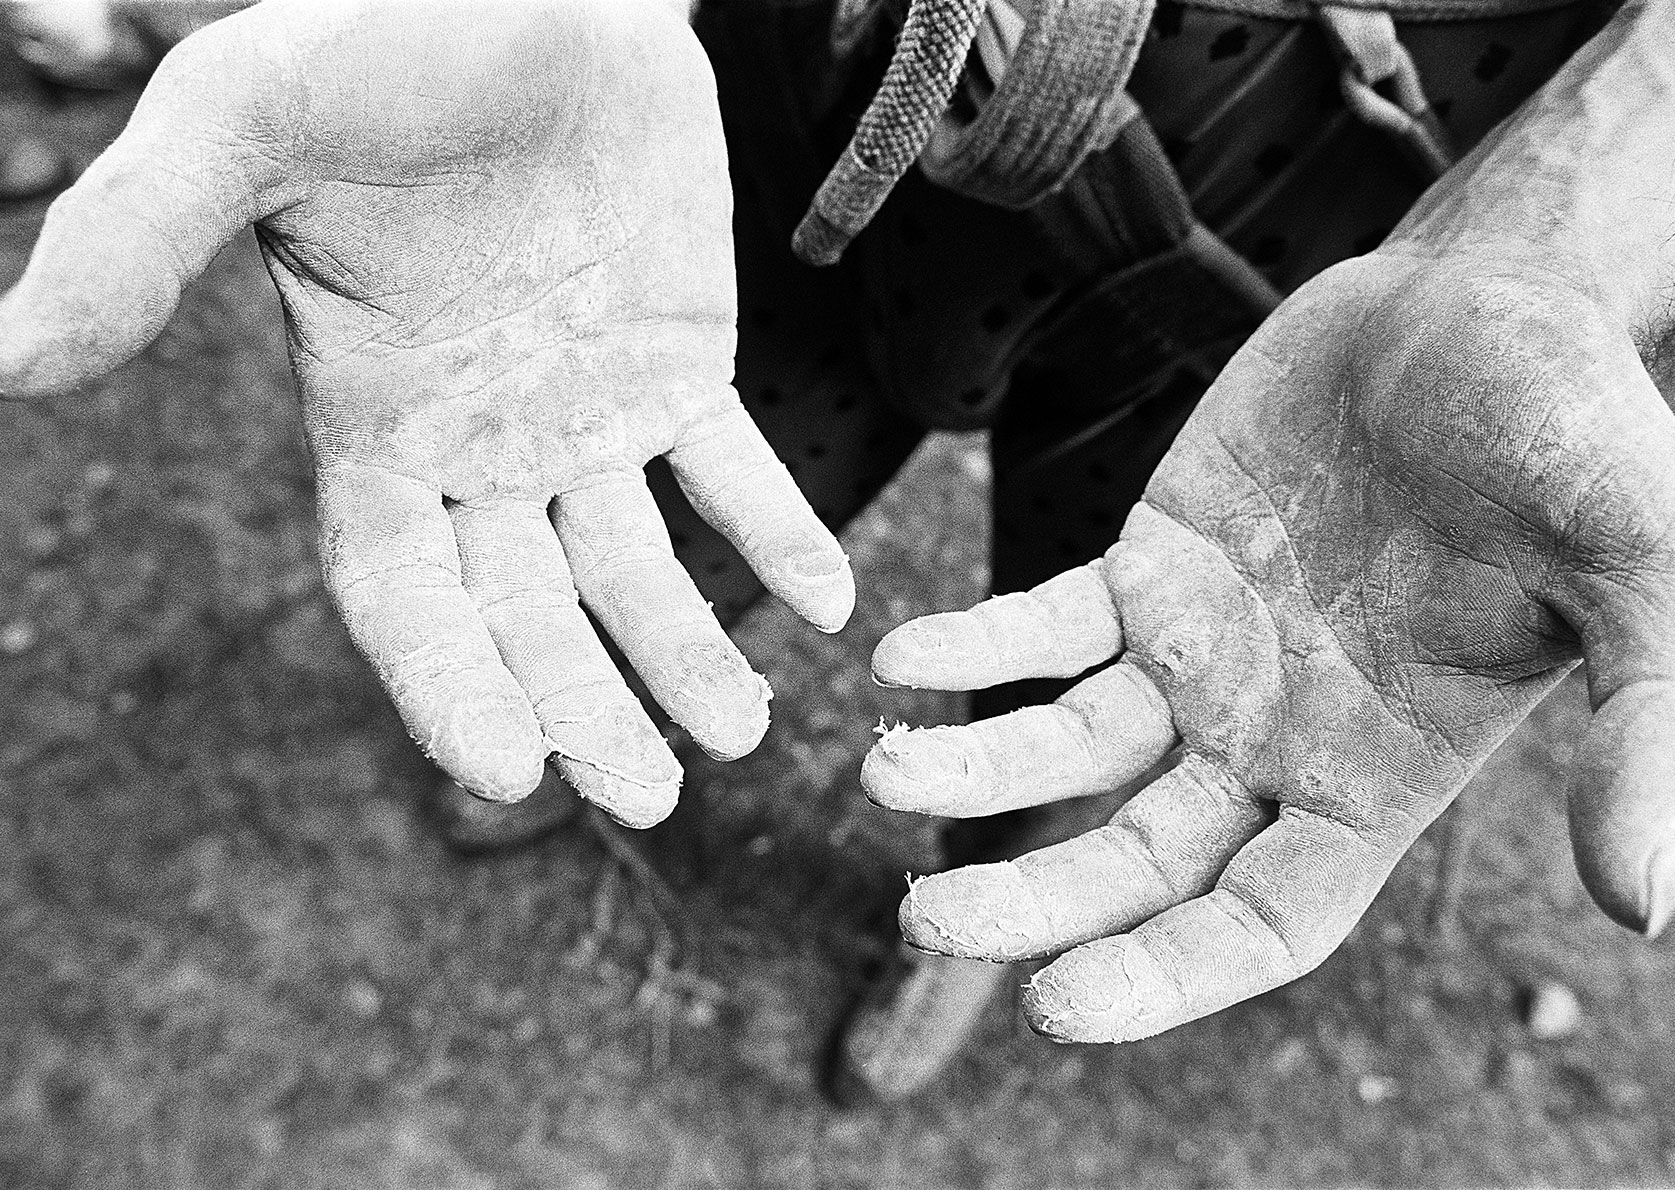 Geschundene Hände eines Kletterers mit teils aufgerissener Haut